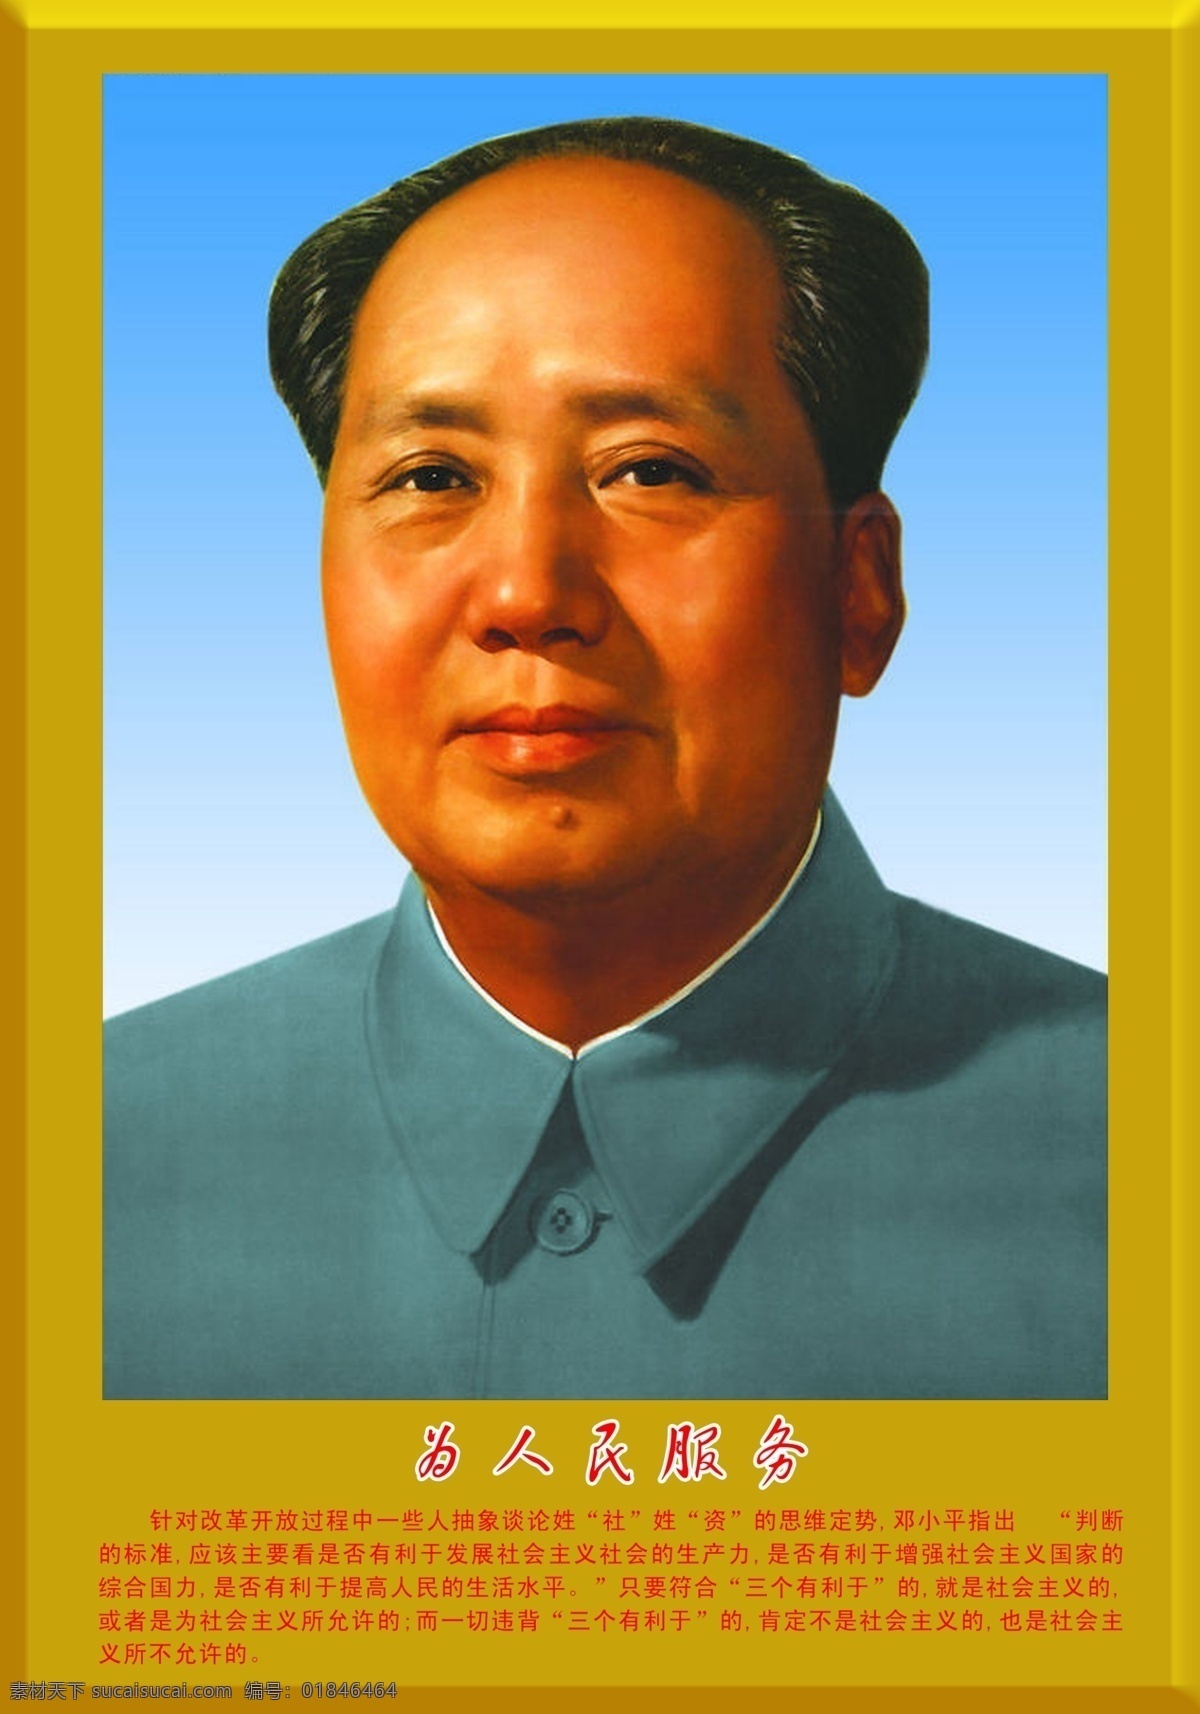 毛主席画像 毛主席 国家领导人 毛泽东 其他模版 广告设计模板 源文件